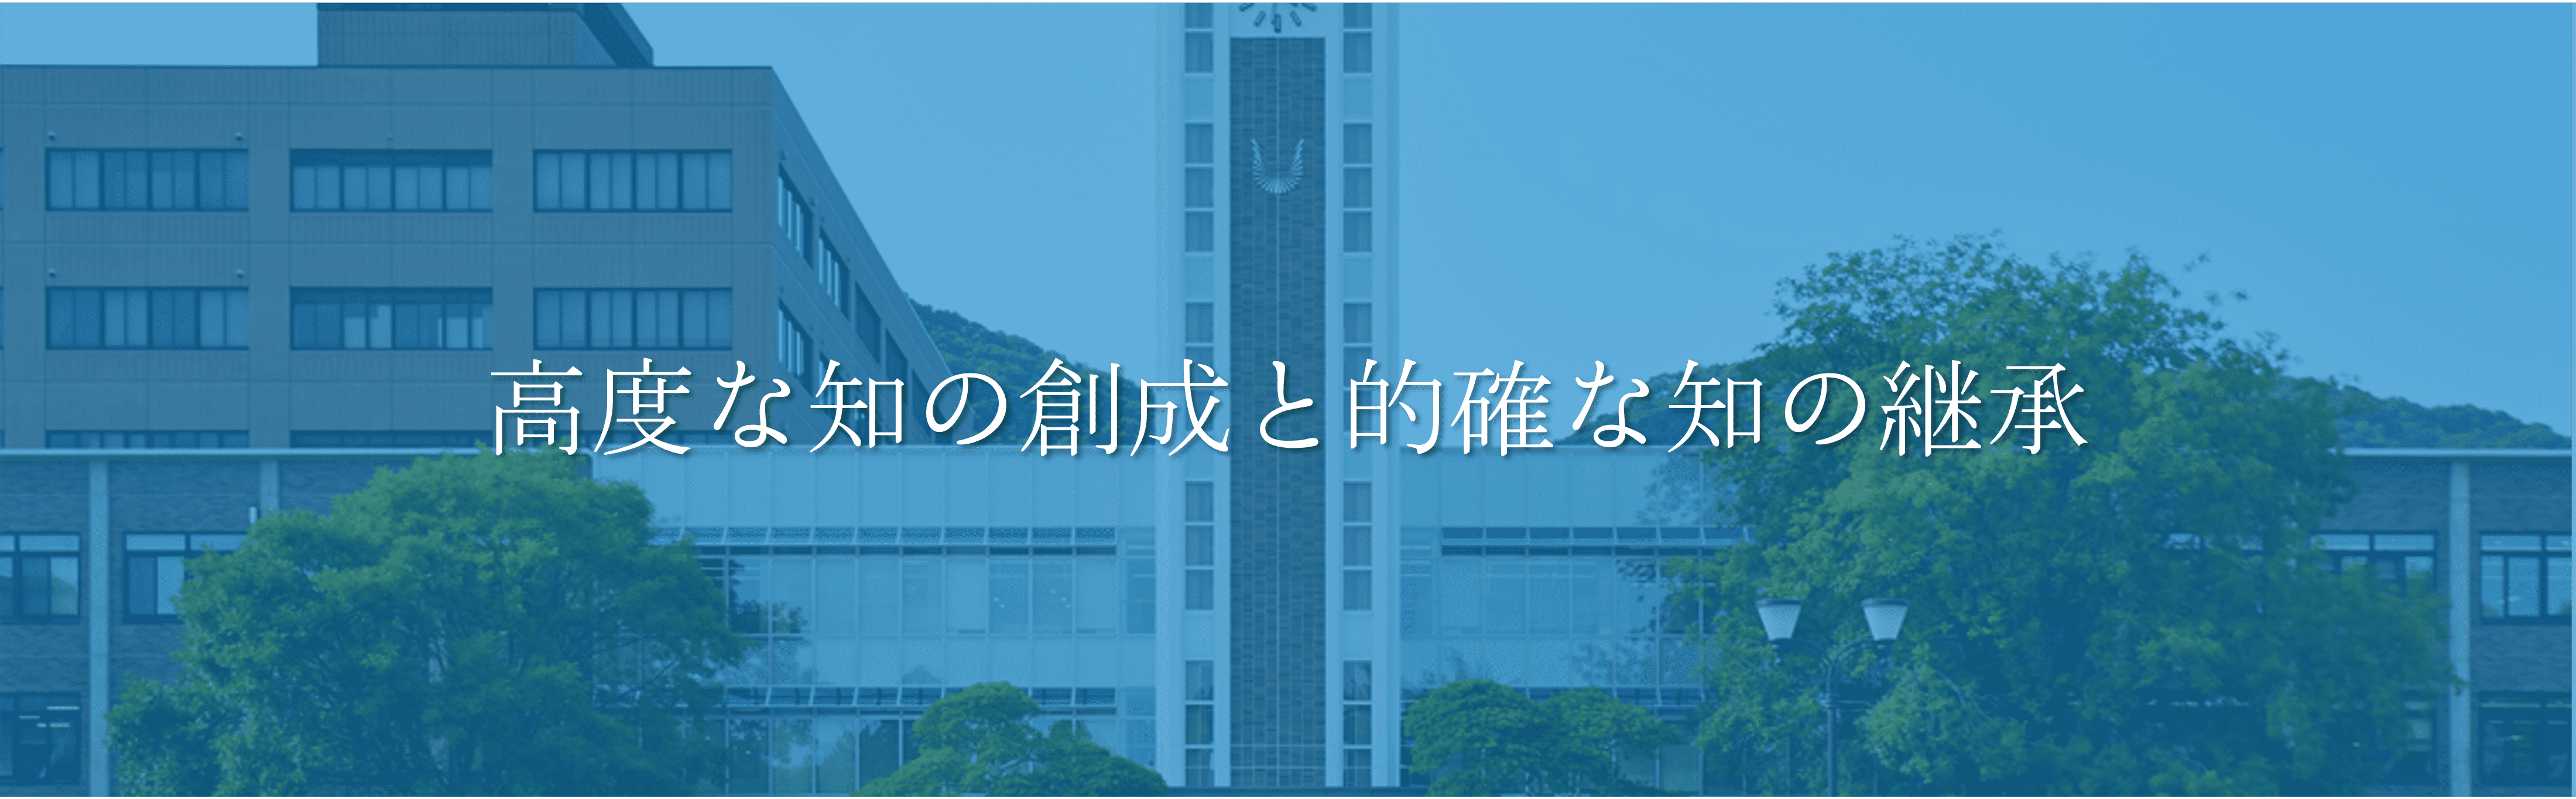 岡山大学 モットー